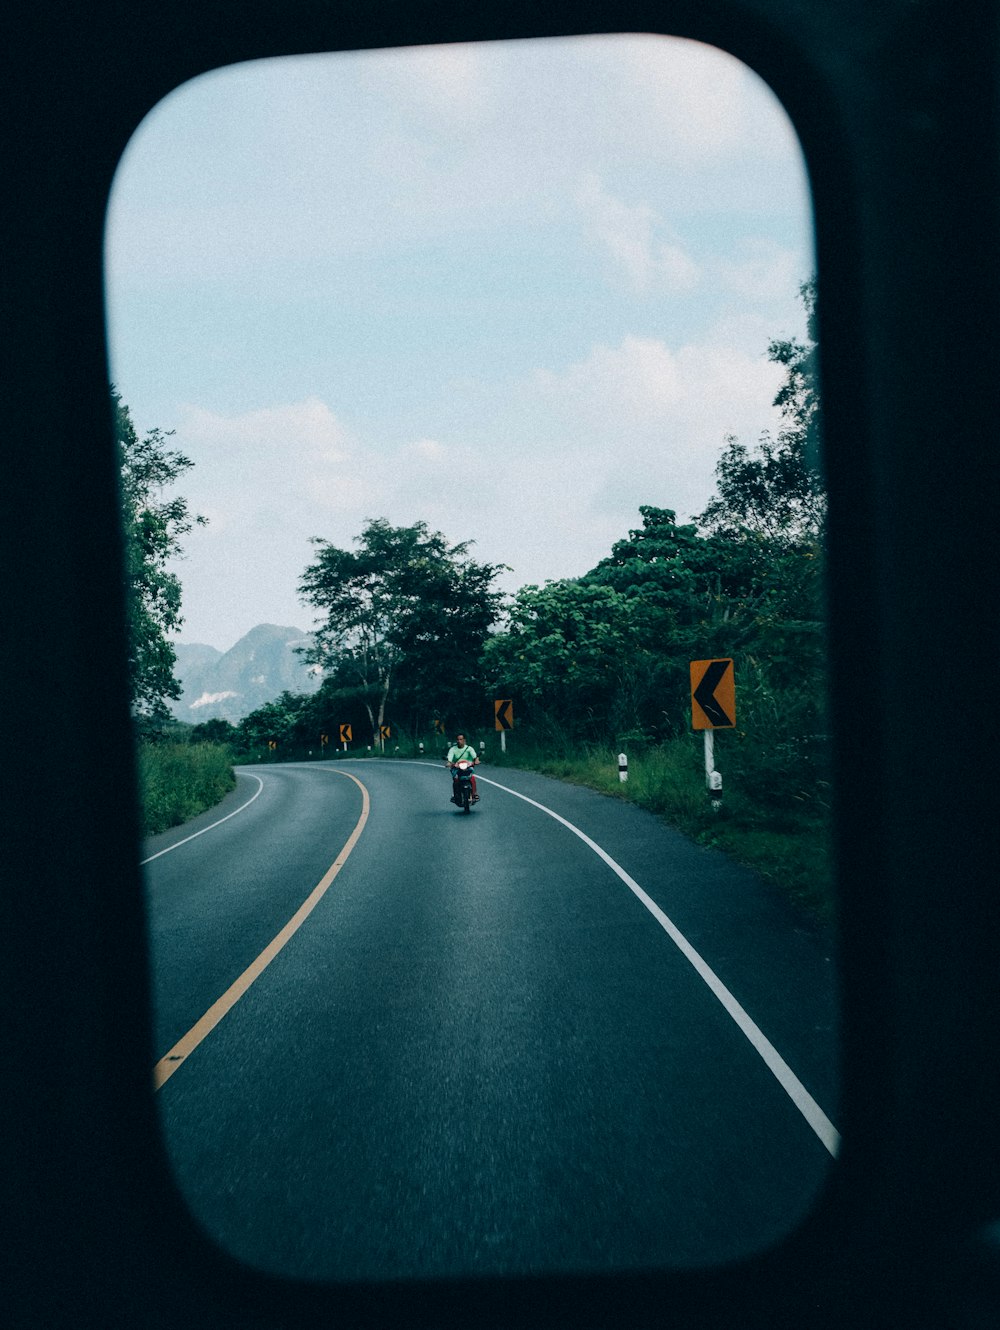 una persona conduciendo una motocicleta por una carretera con curvas